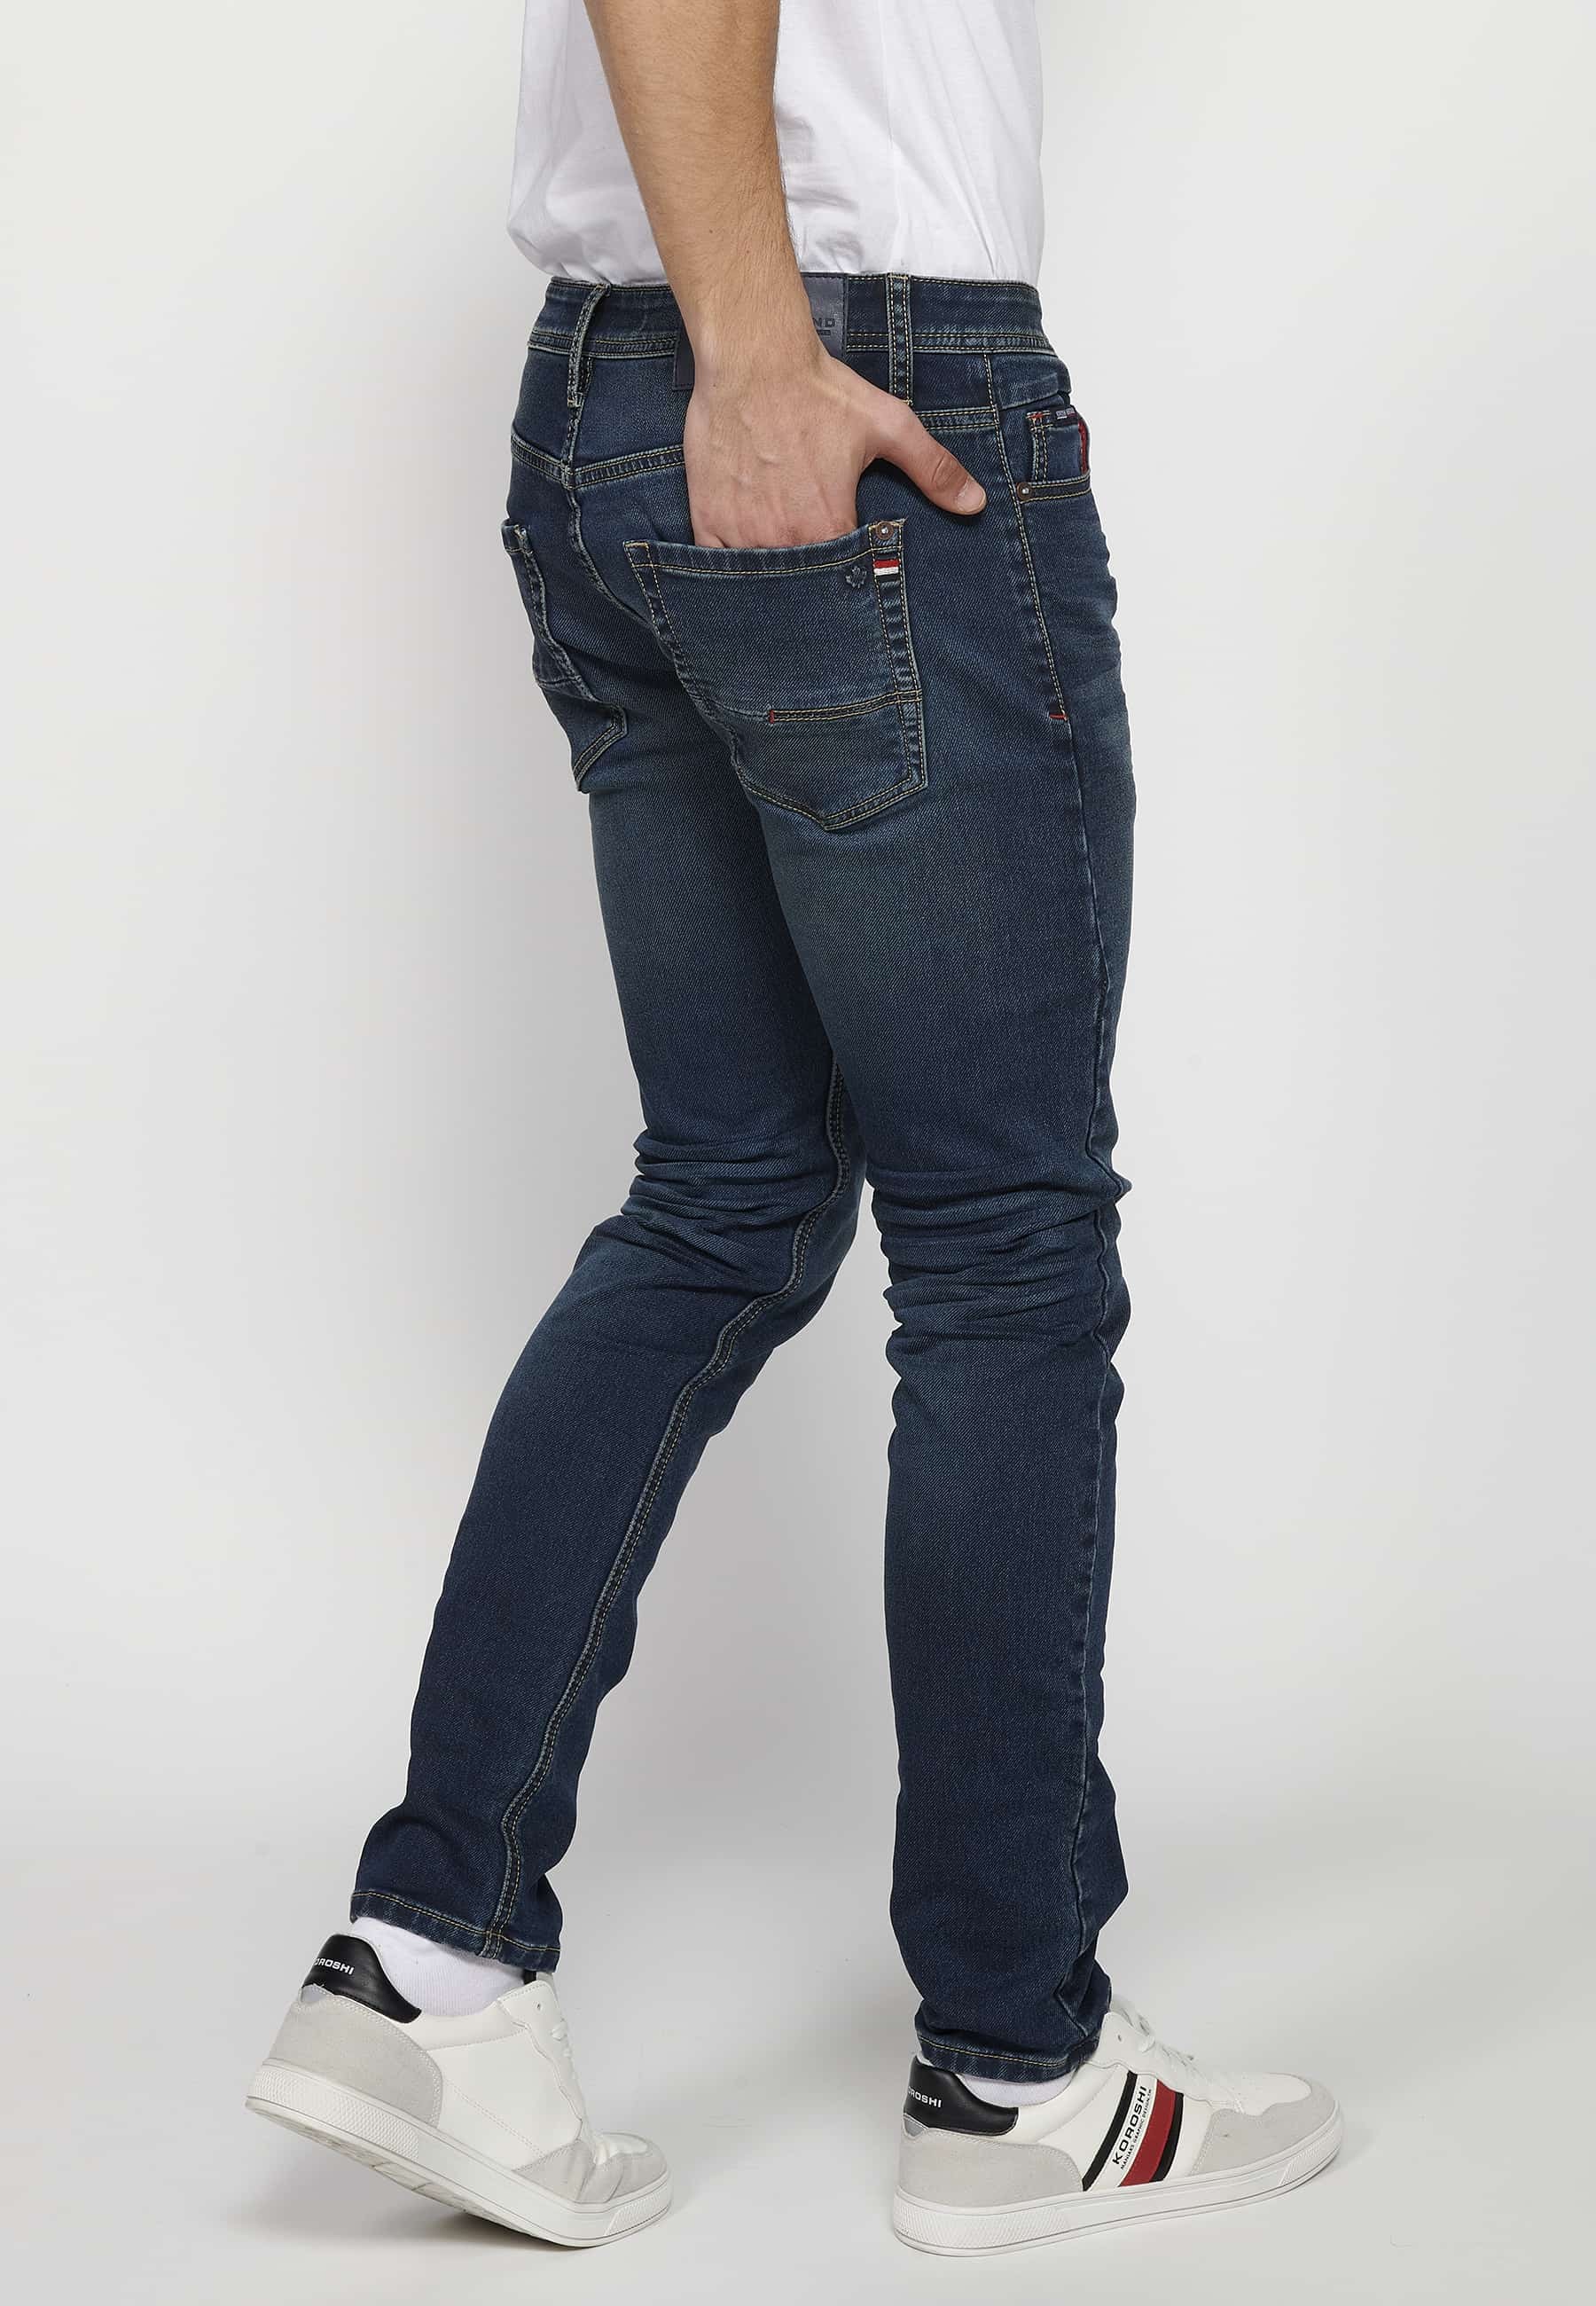 Pantalons llargs Jeans slim fit amb Tancament davanter amb cremallera i botó amb Cinc butxaques, un ceriller de Color Blau per a Home 5